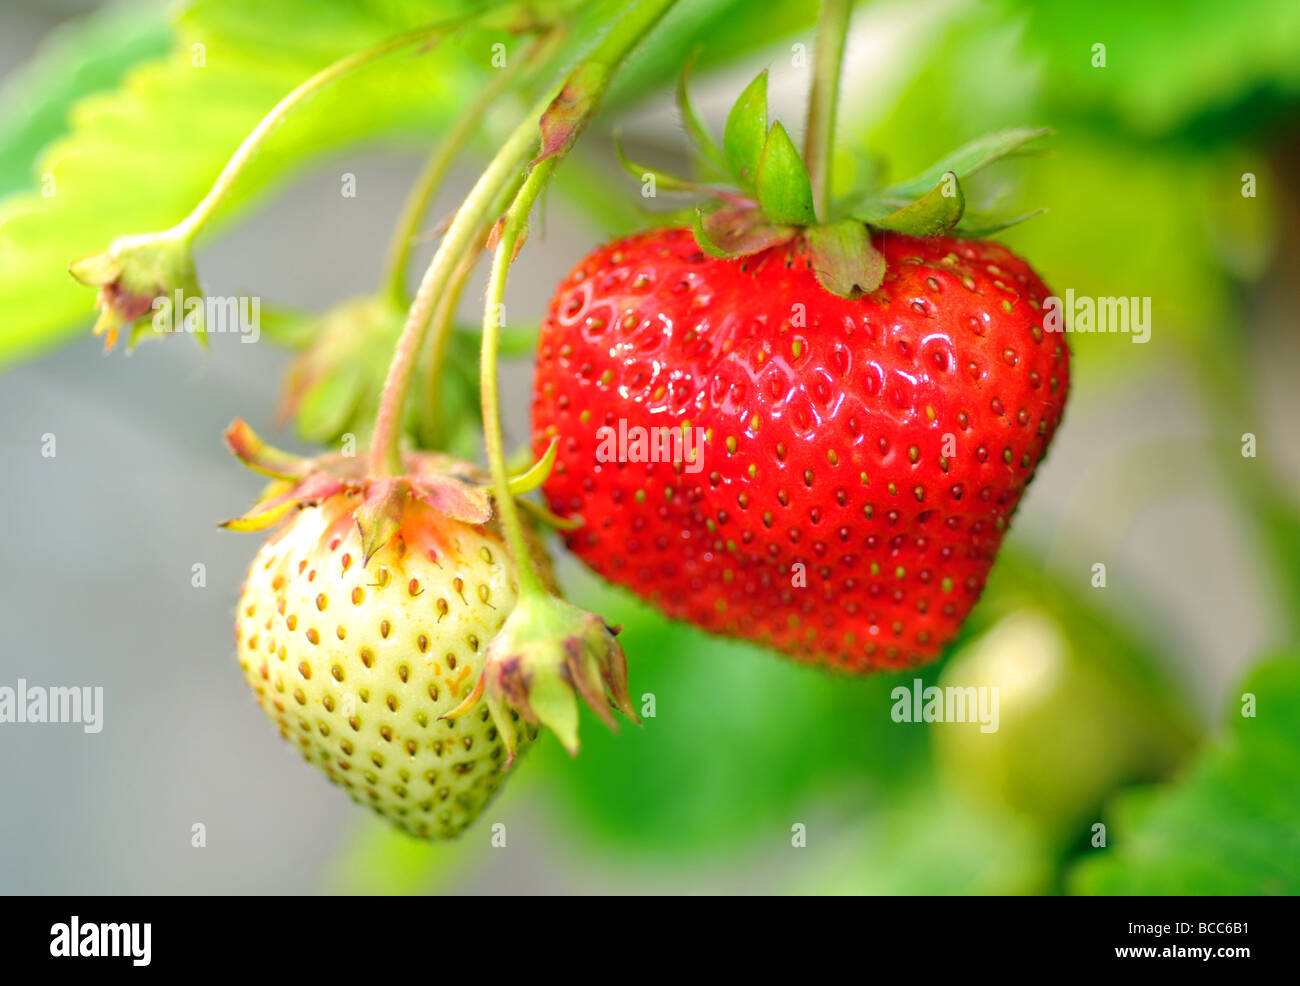 Strawberry, strawberries Stock Photo